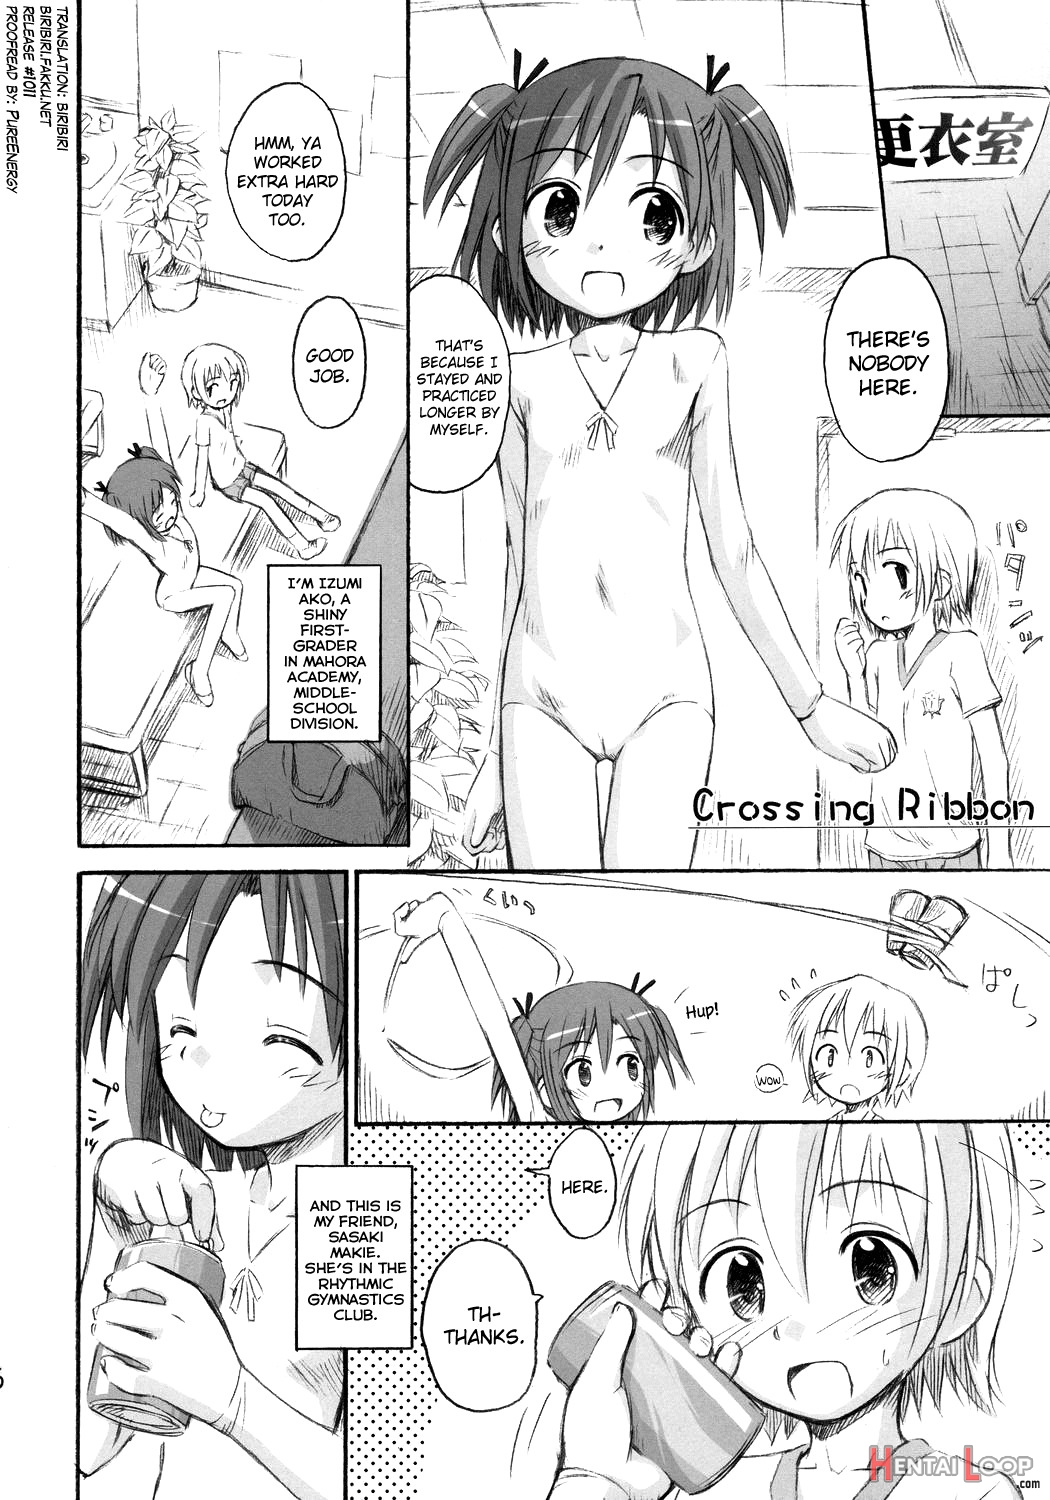 Ho-kago Wa Shintaisou! page 5